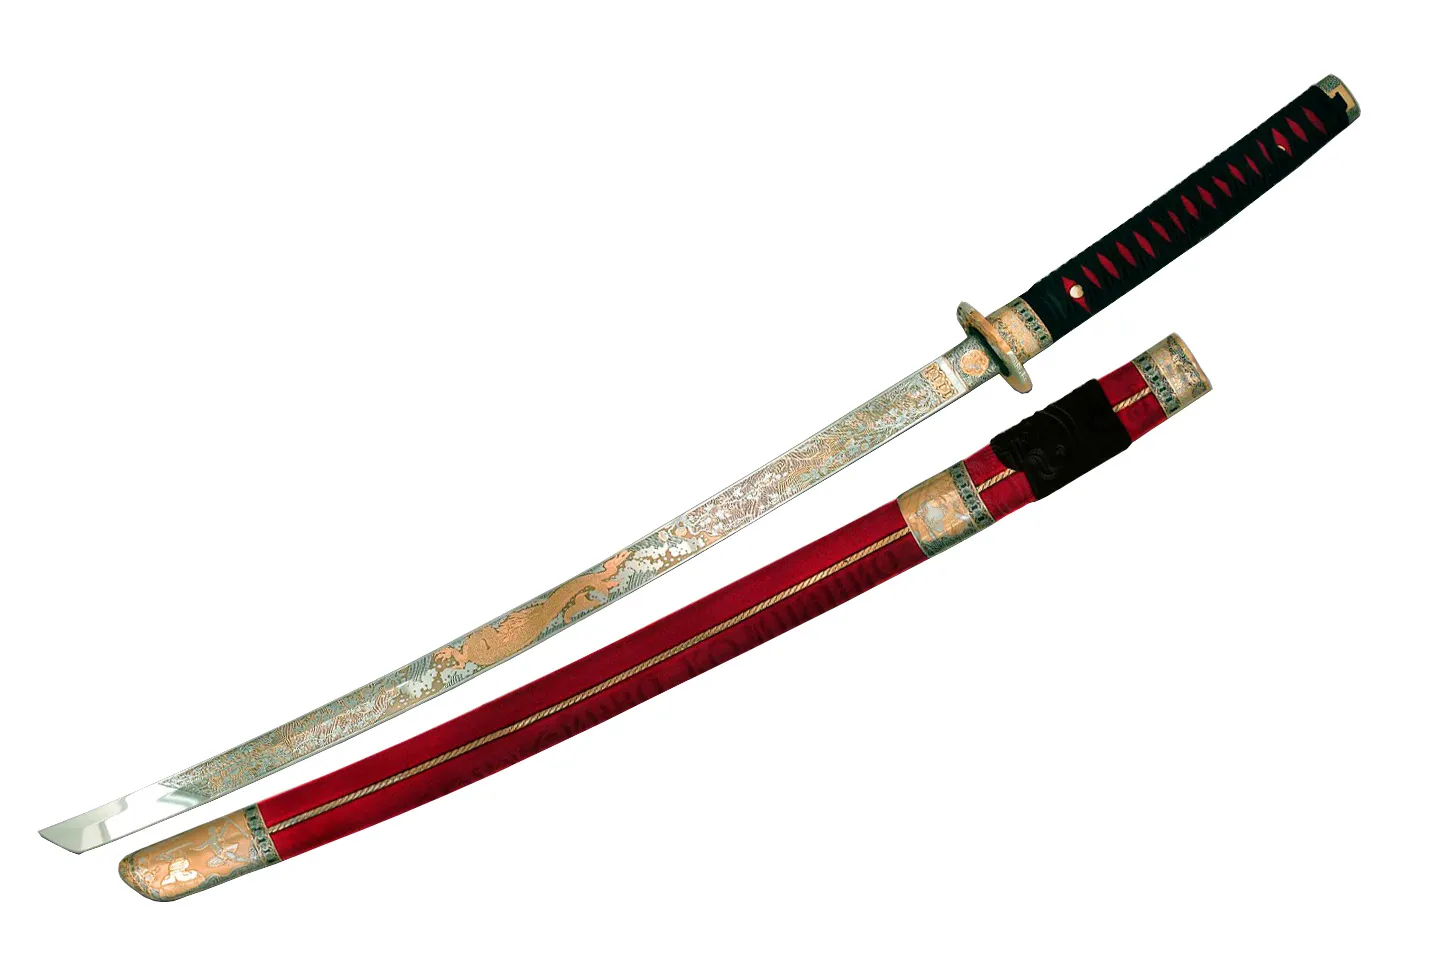 Как сделать самурайский меч: 13 шагов